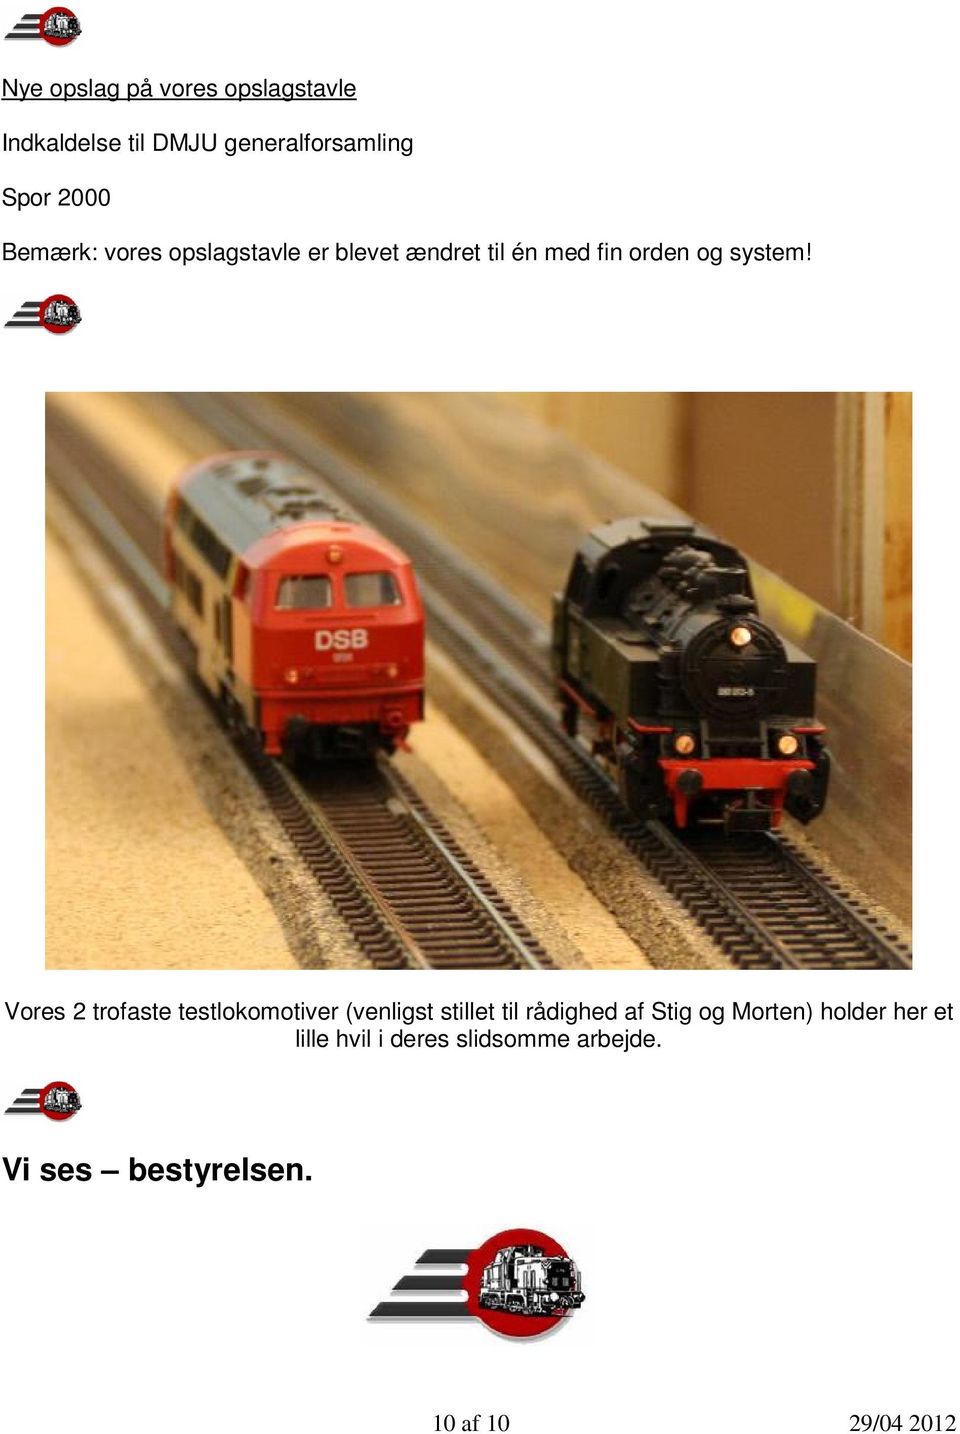 Vores 2 trofaste testlokomotiver (venligst stillet til rådighed af Stig og Morten)